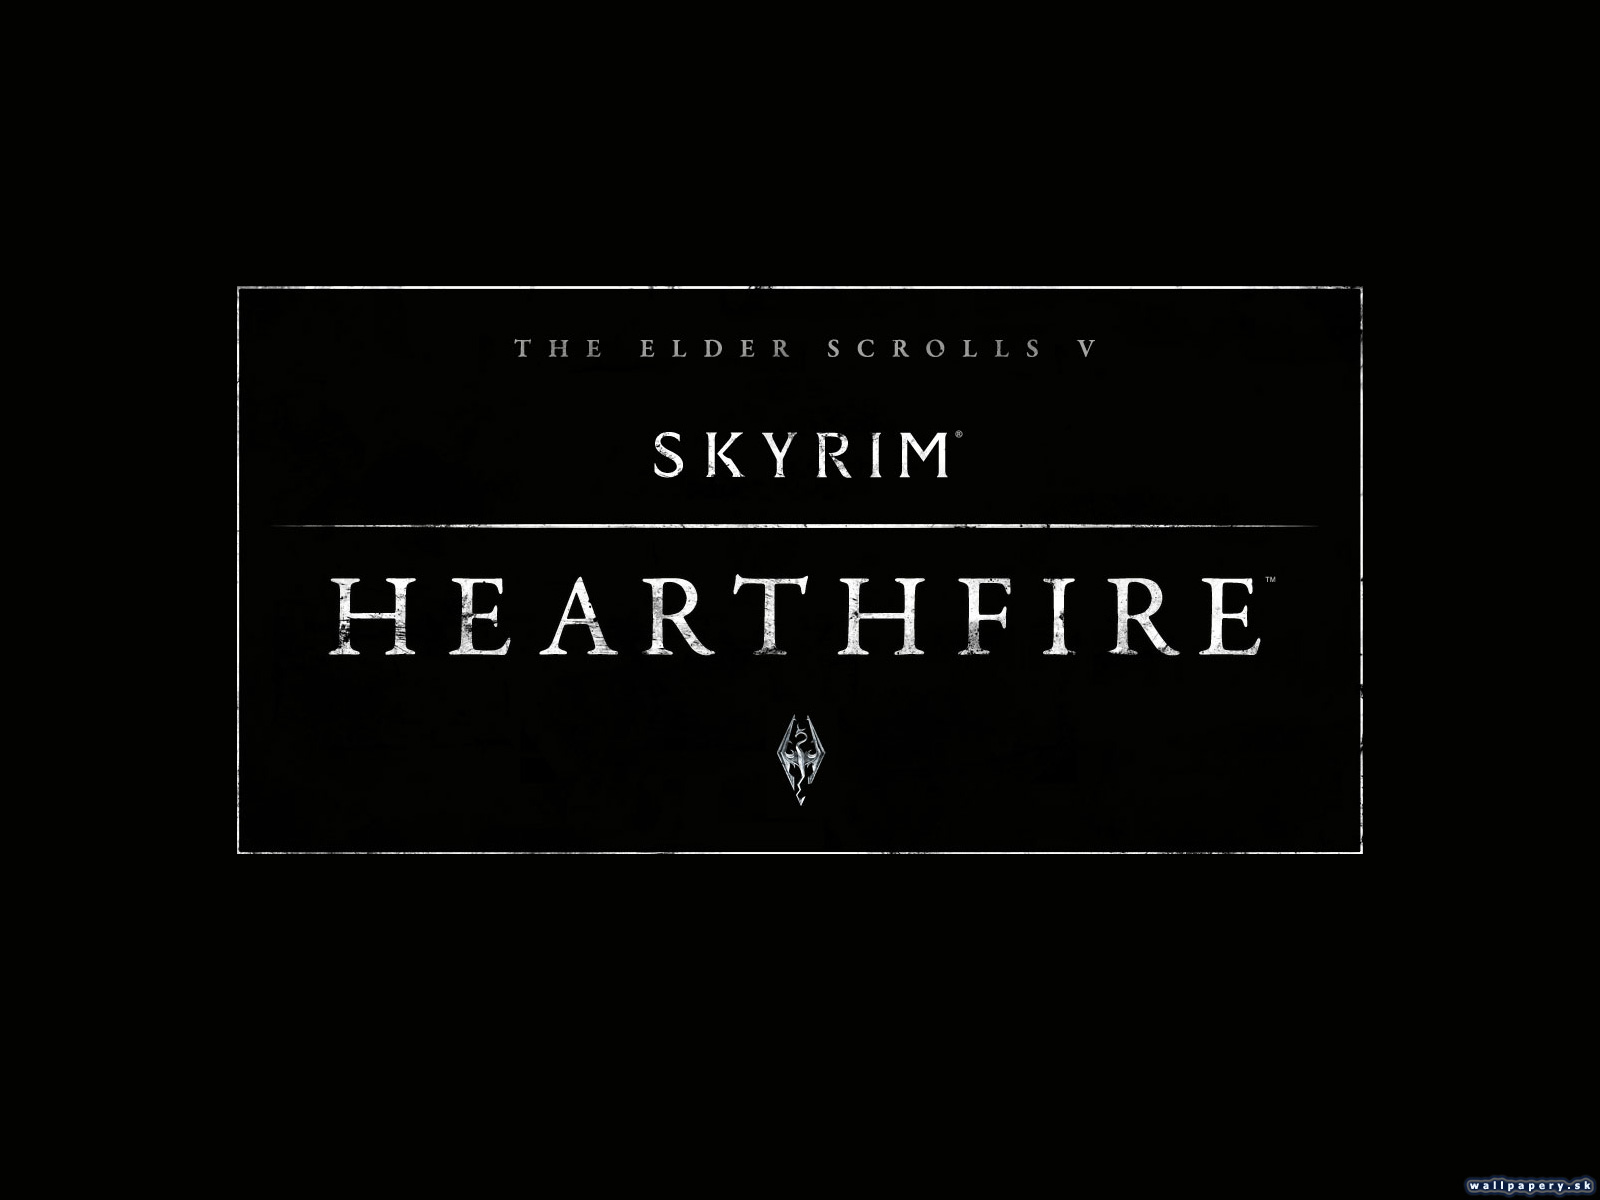 The Elder Scrolls V: Skyrim - Hearthfire - wallpaper 2